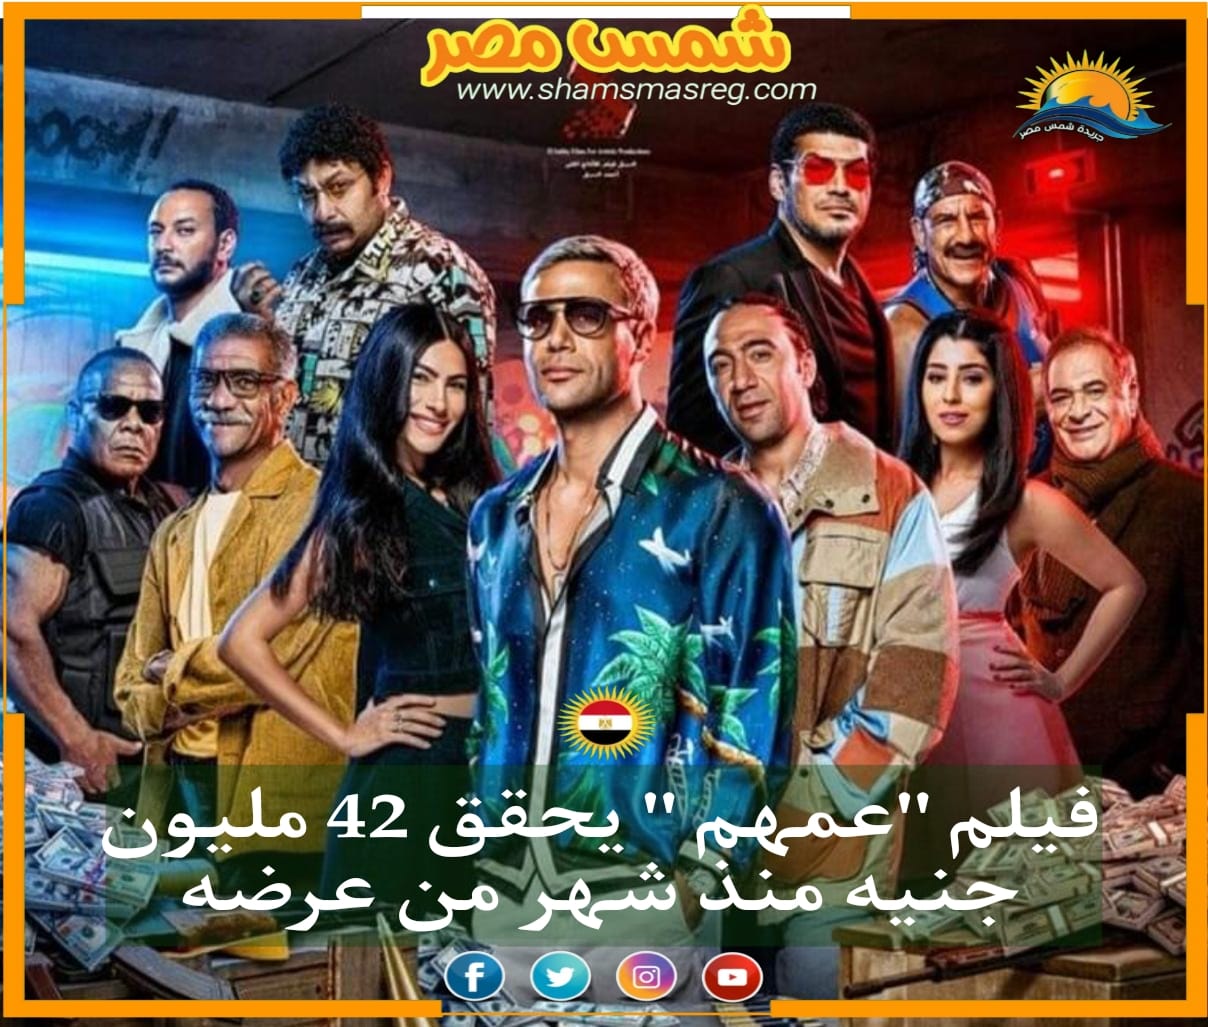 |شمس مصر|.. فيلم "عمهم " يحقق 42 مليون جنيه منذ شهر من عرضه